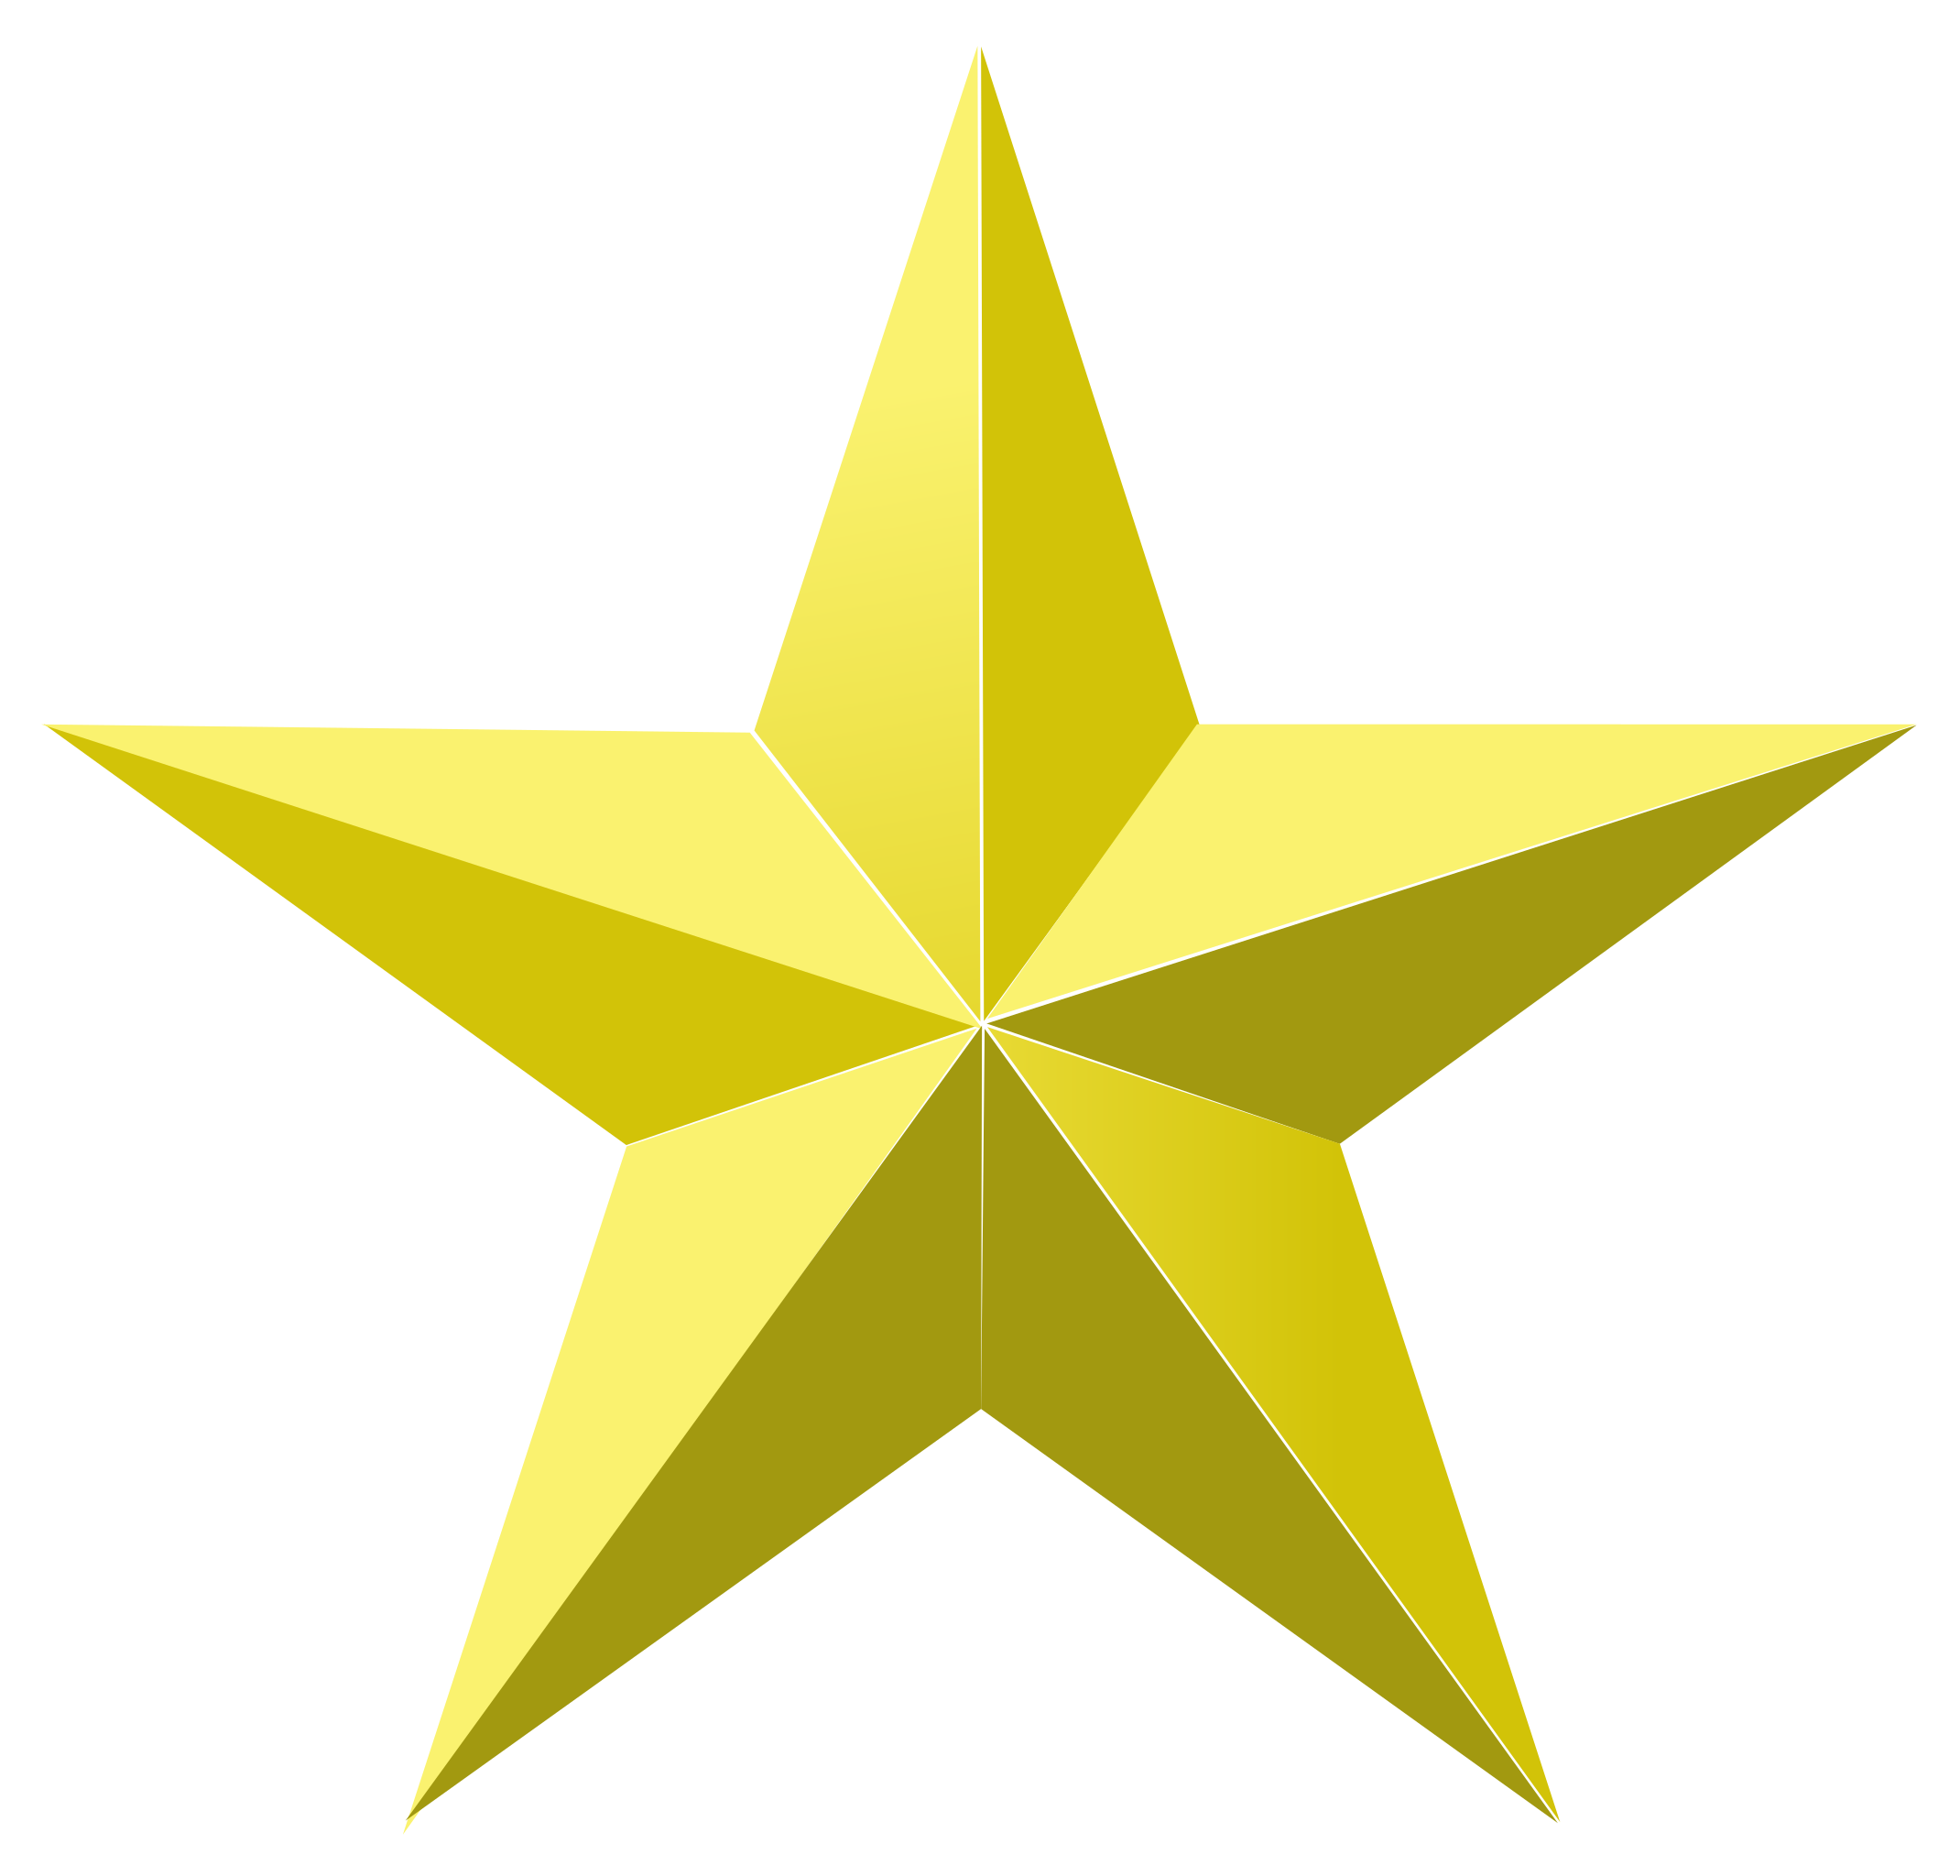 Файл:Golden star.svg — Википедия